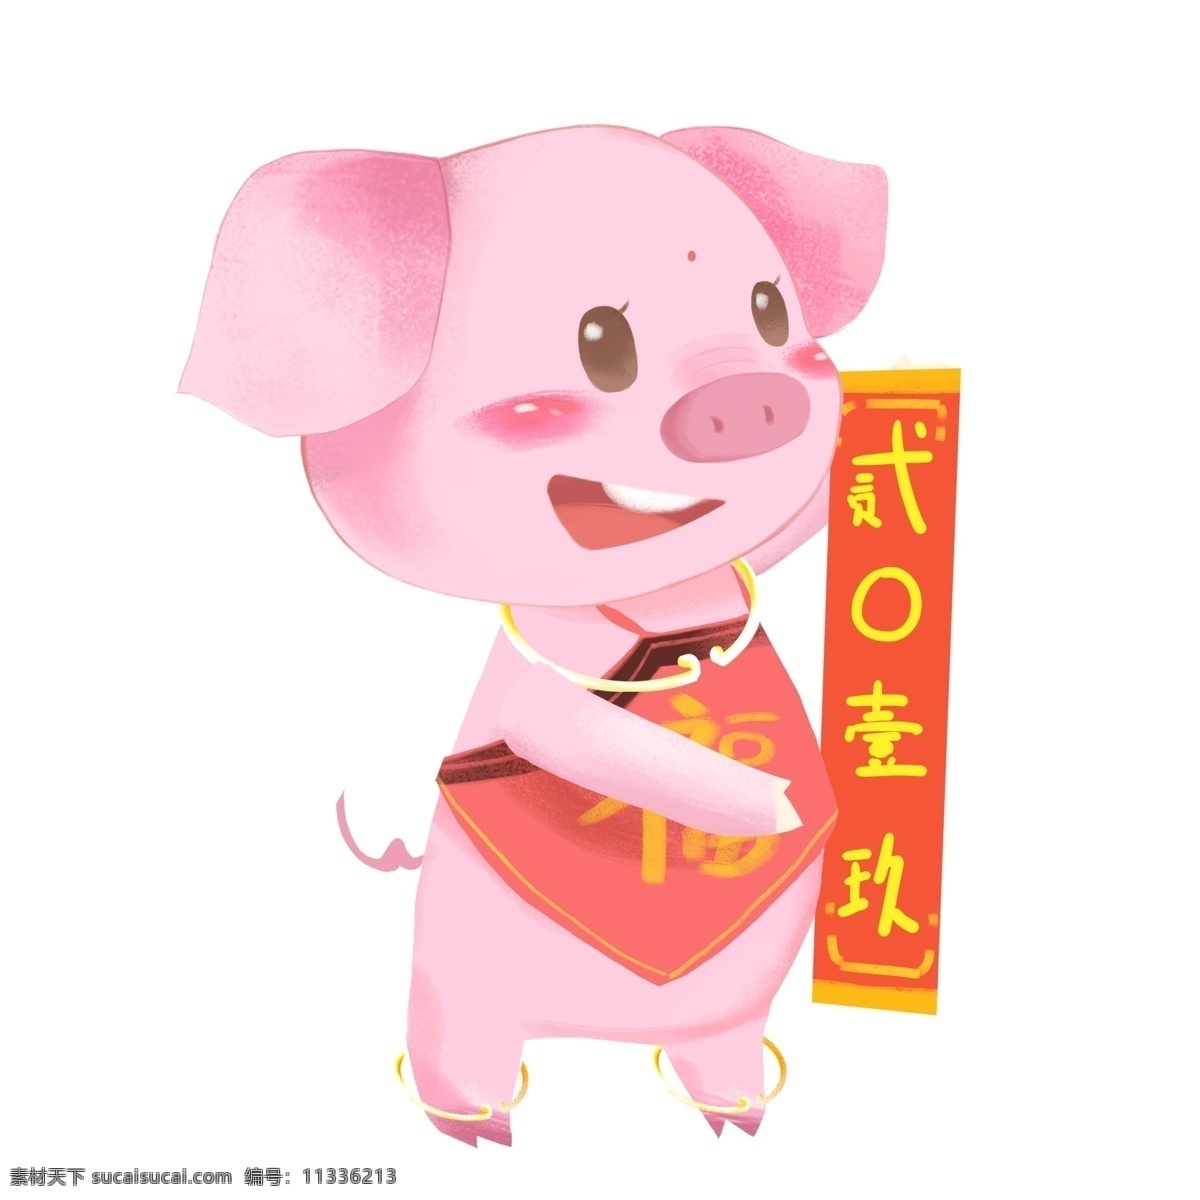 卡通 2019 对联 猪 中国风 春节 插画 手绘 小猪 粉红小猪 新春 新年 猪年 2019年 小猪形象 猪年形象